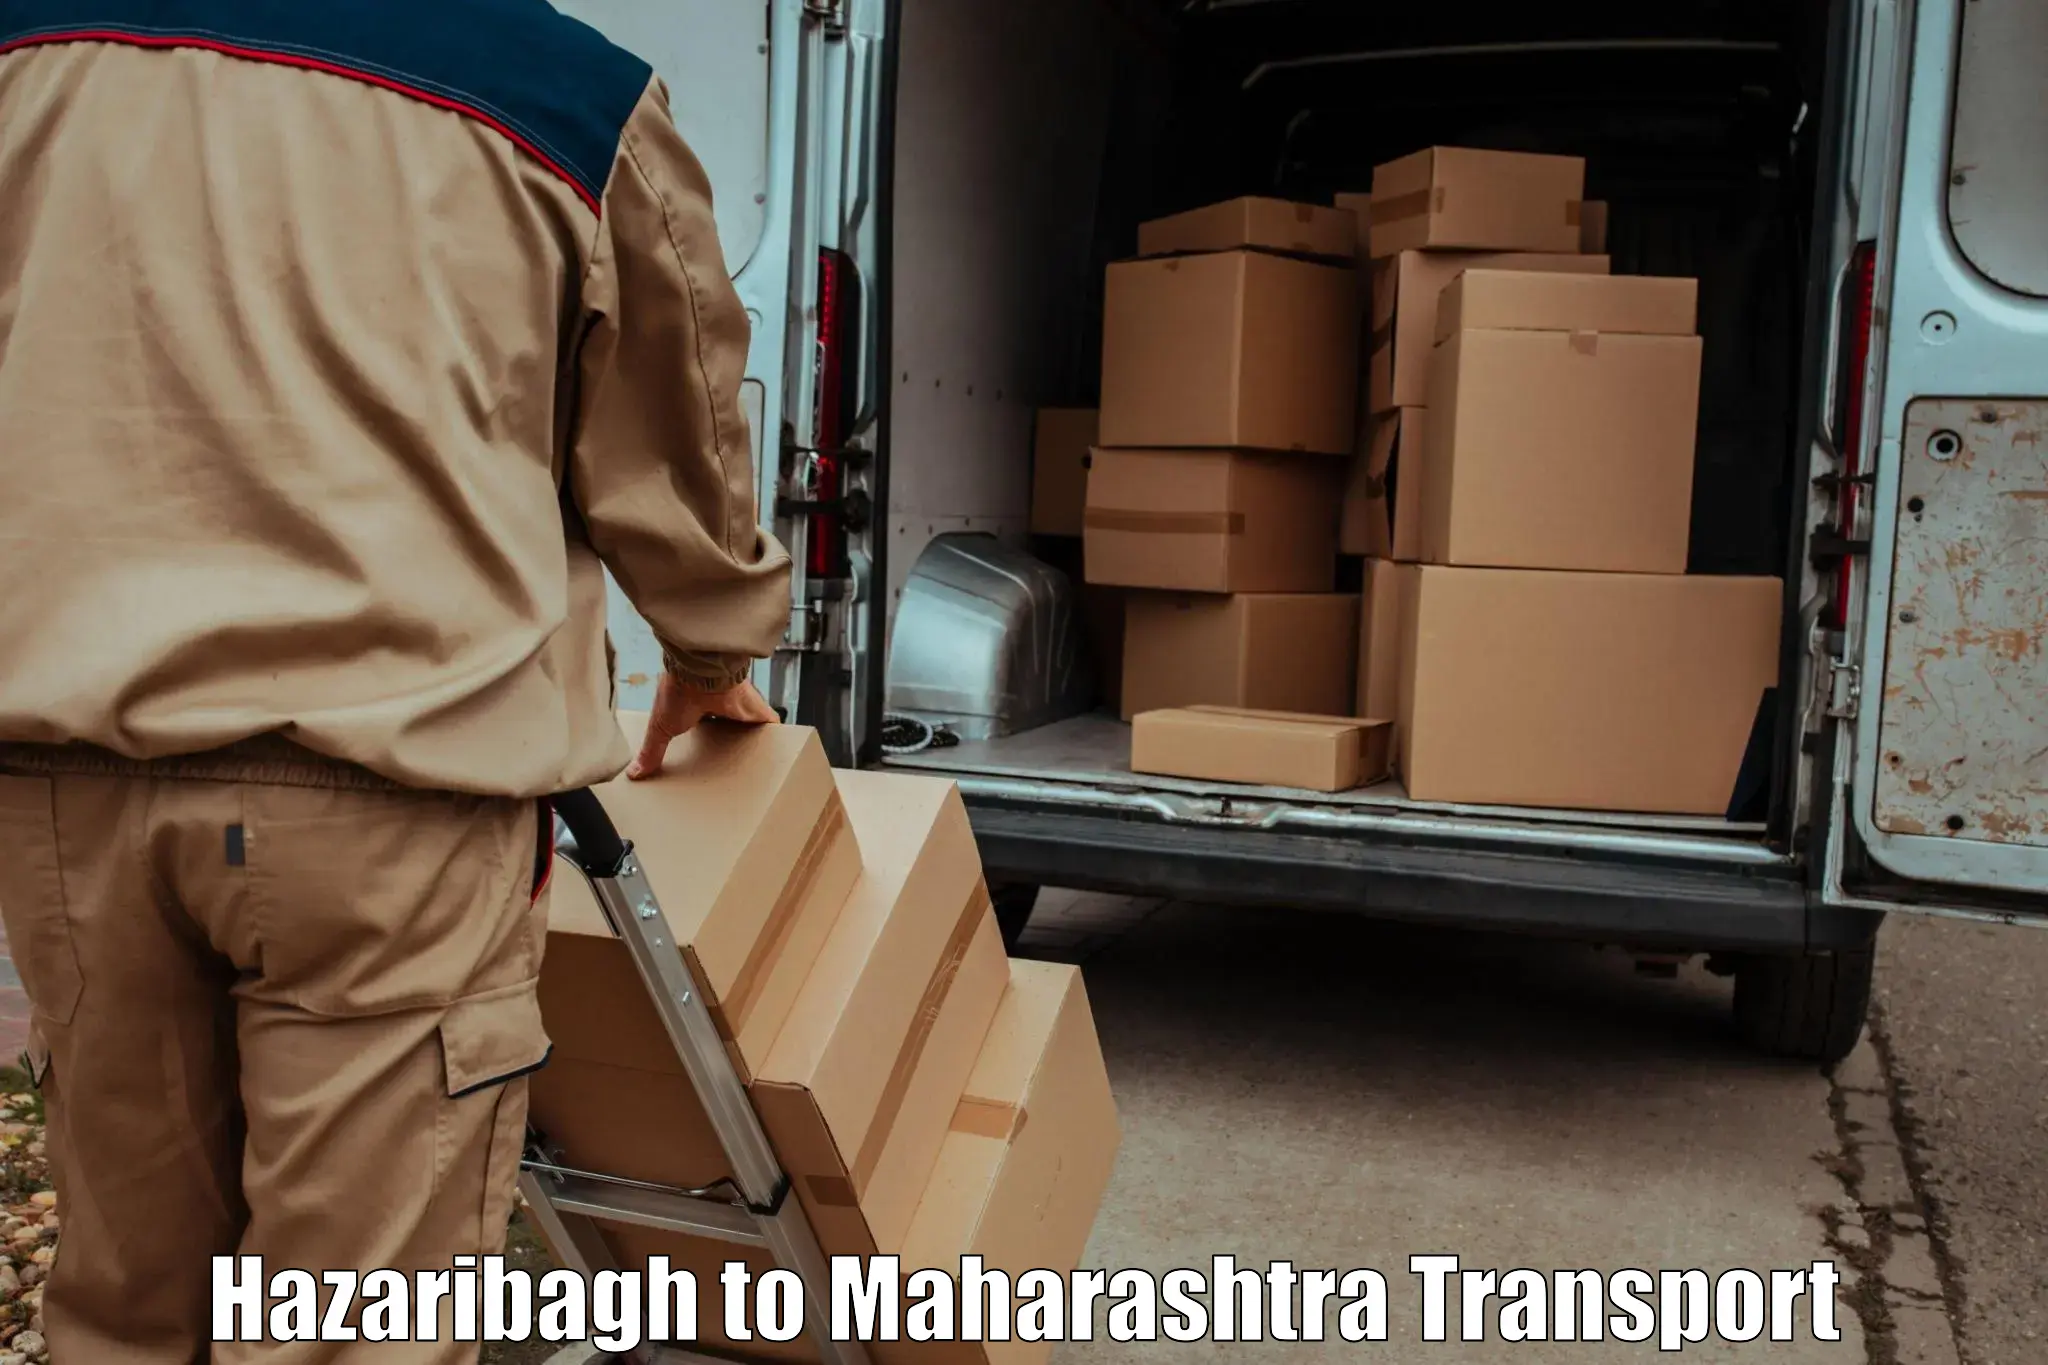 Express transport services Hazaribagh to Dr Babasaheb Ambedkar Marathwada University Aurangabad